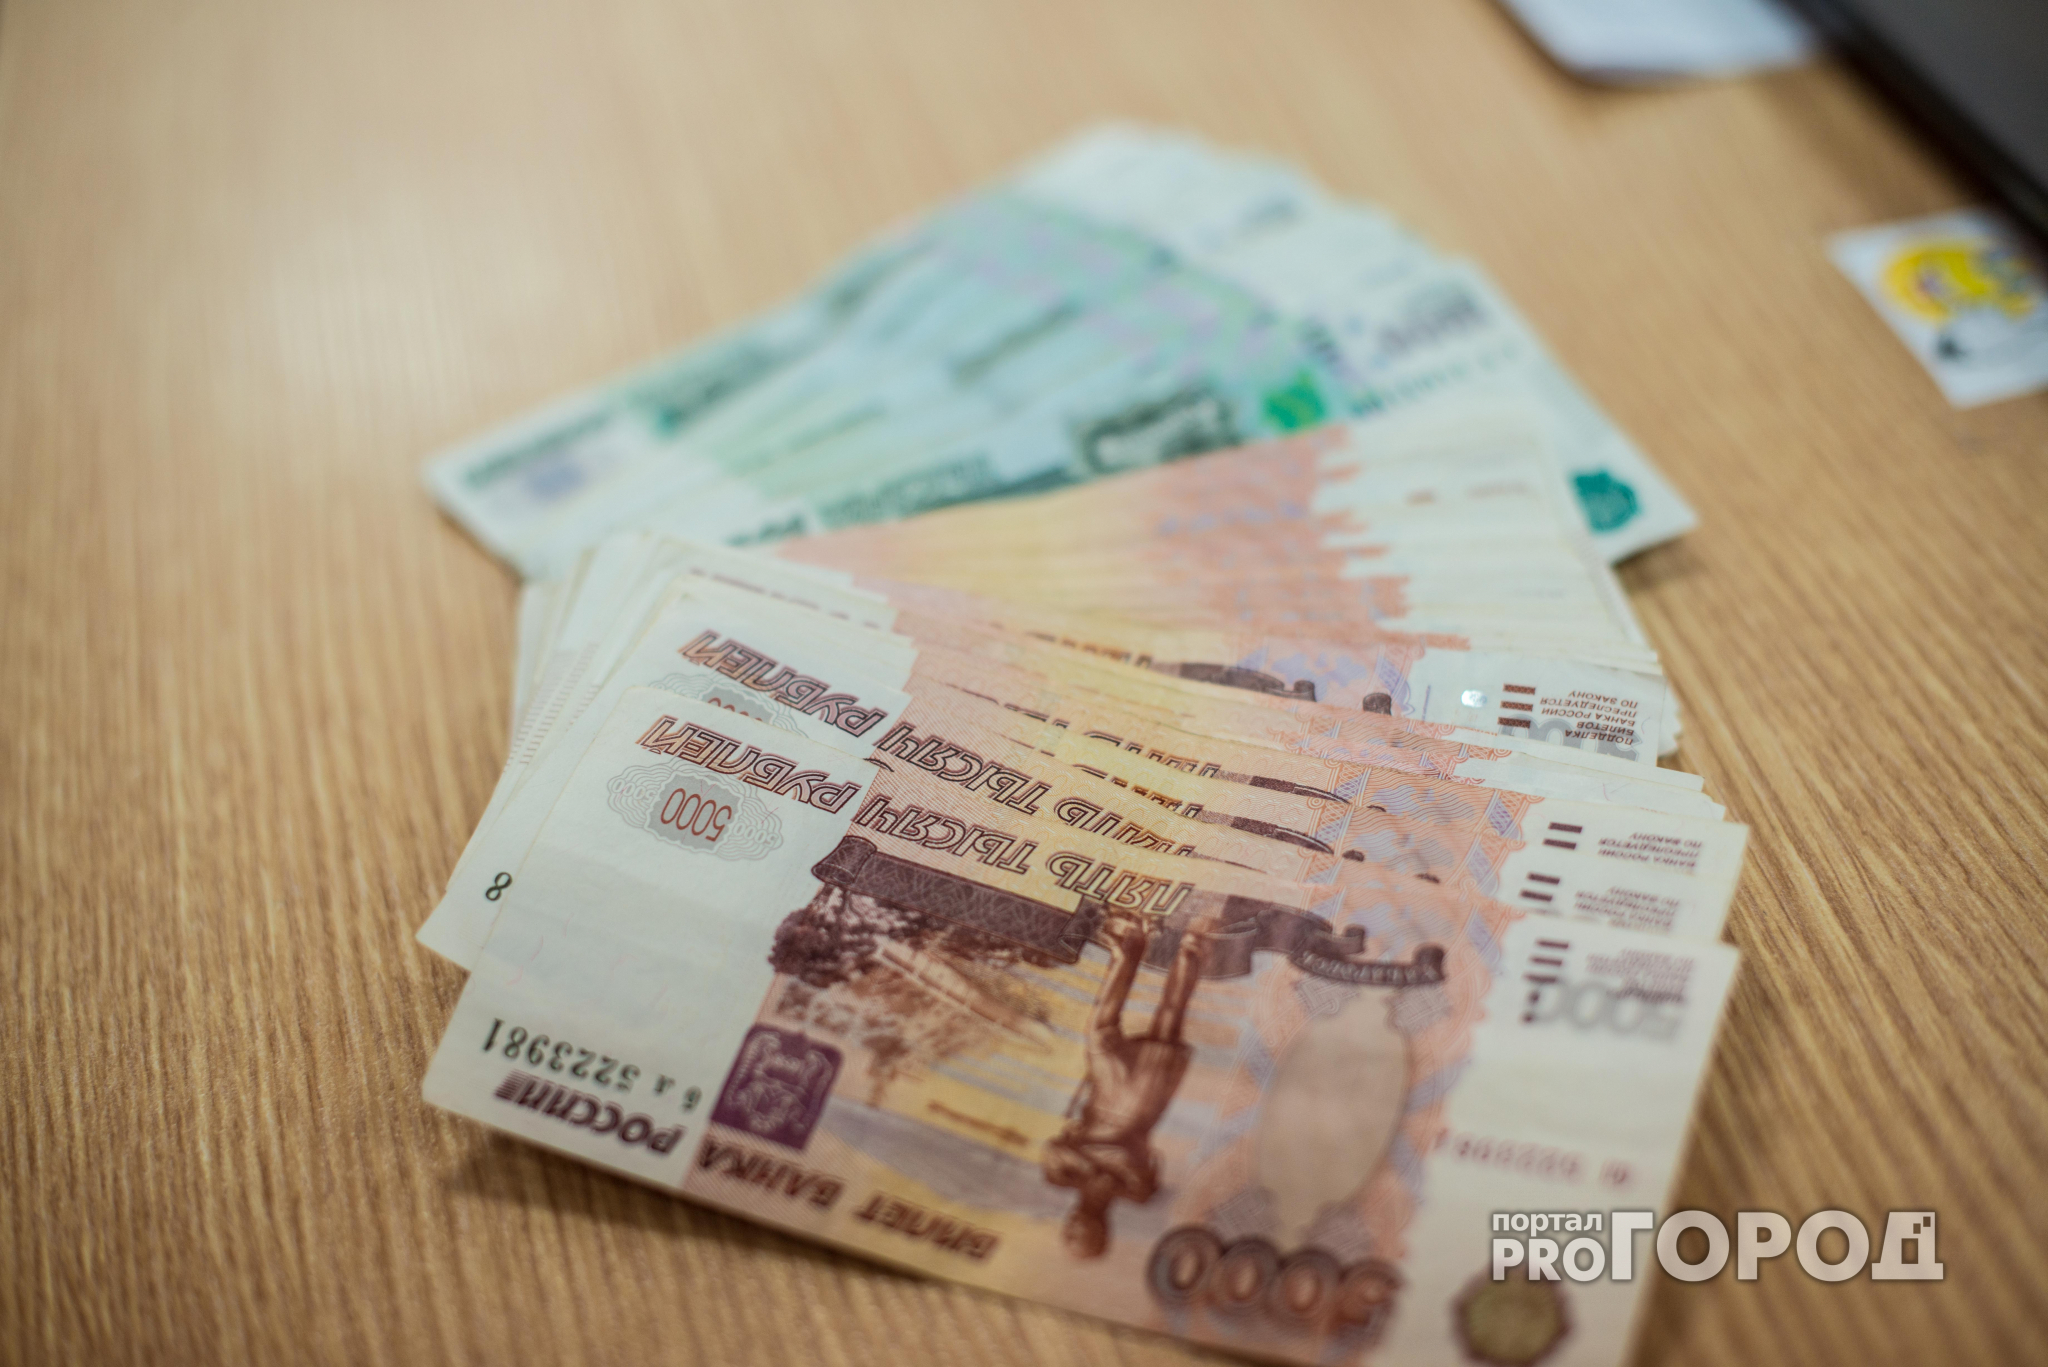 Нижегородские депутаты хотят увеличить расходы бюджета на себя и своих помощников